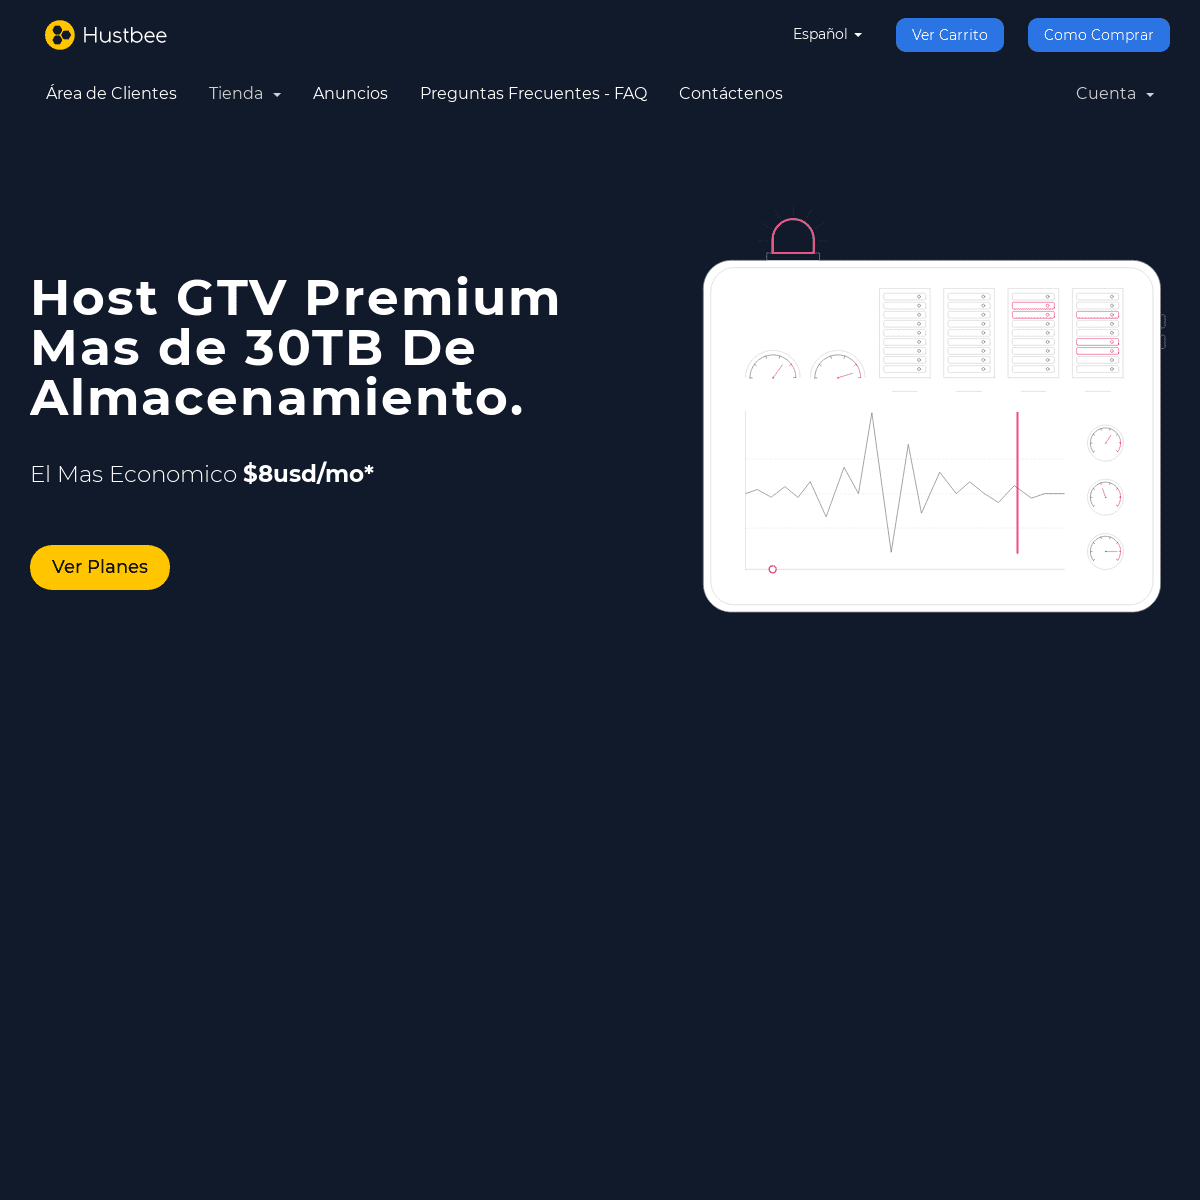 A complete backup of yohostvip.com